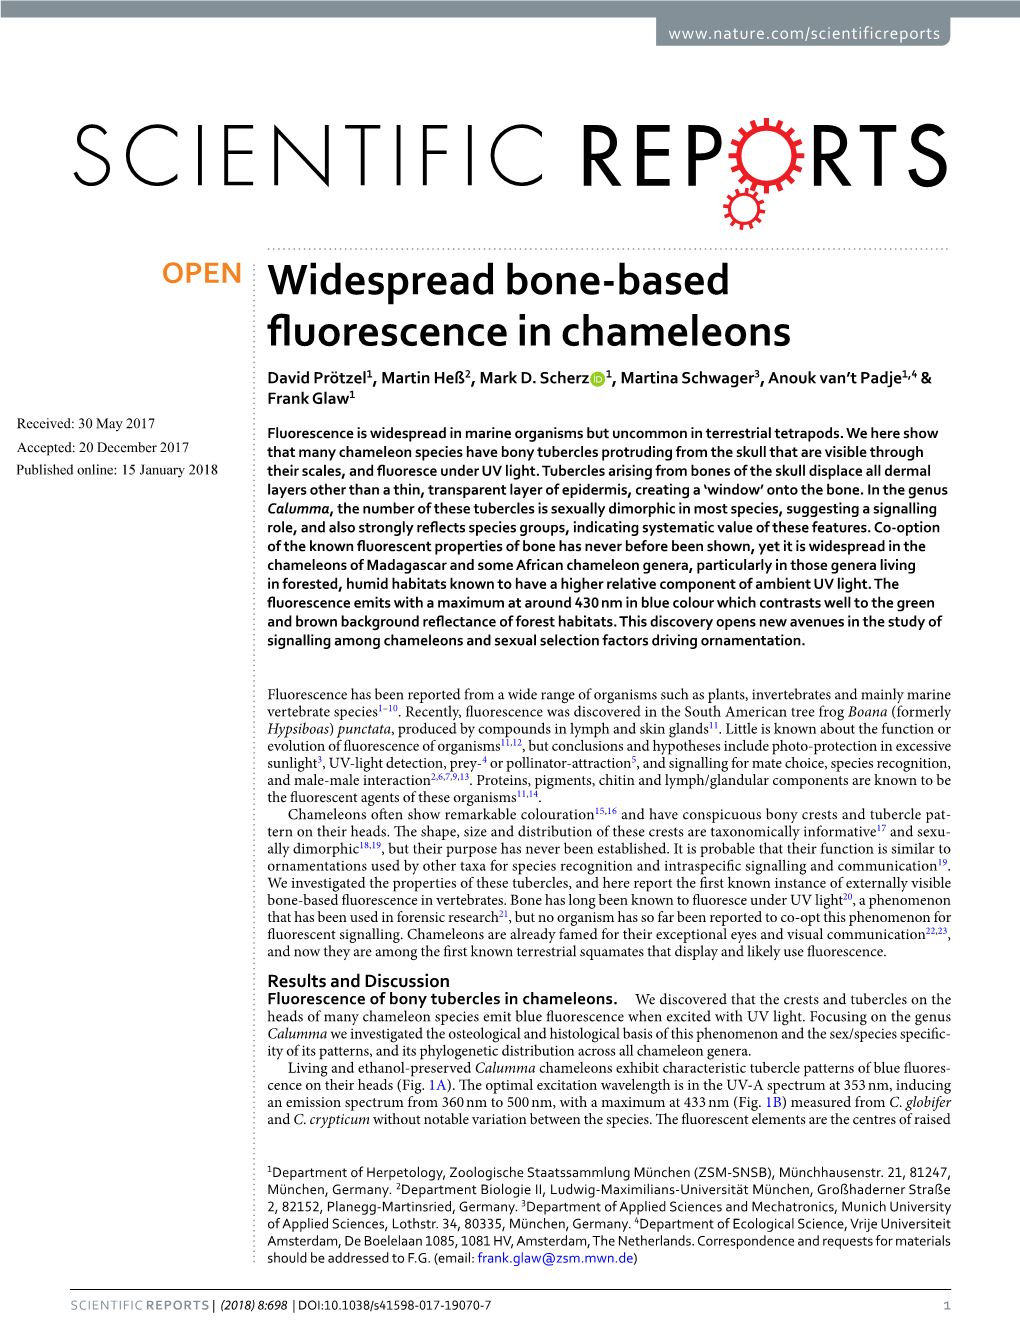 Widespread Bone-Based Fluorescence in Chameleons